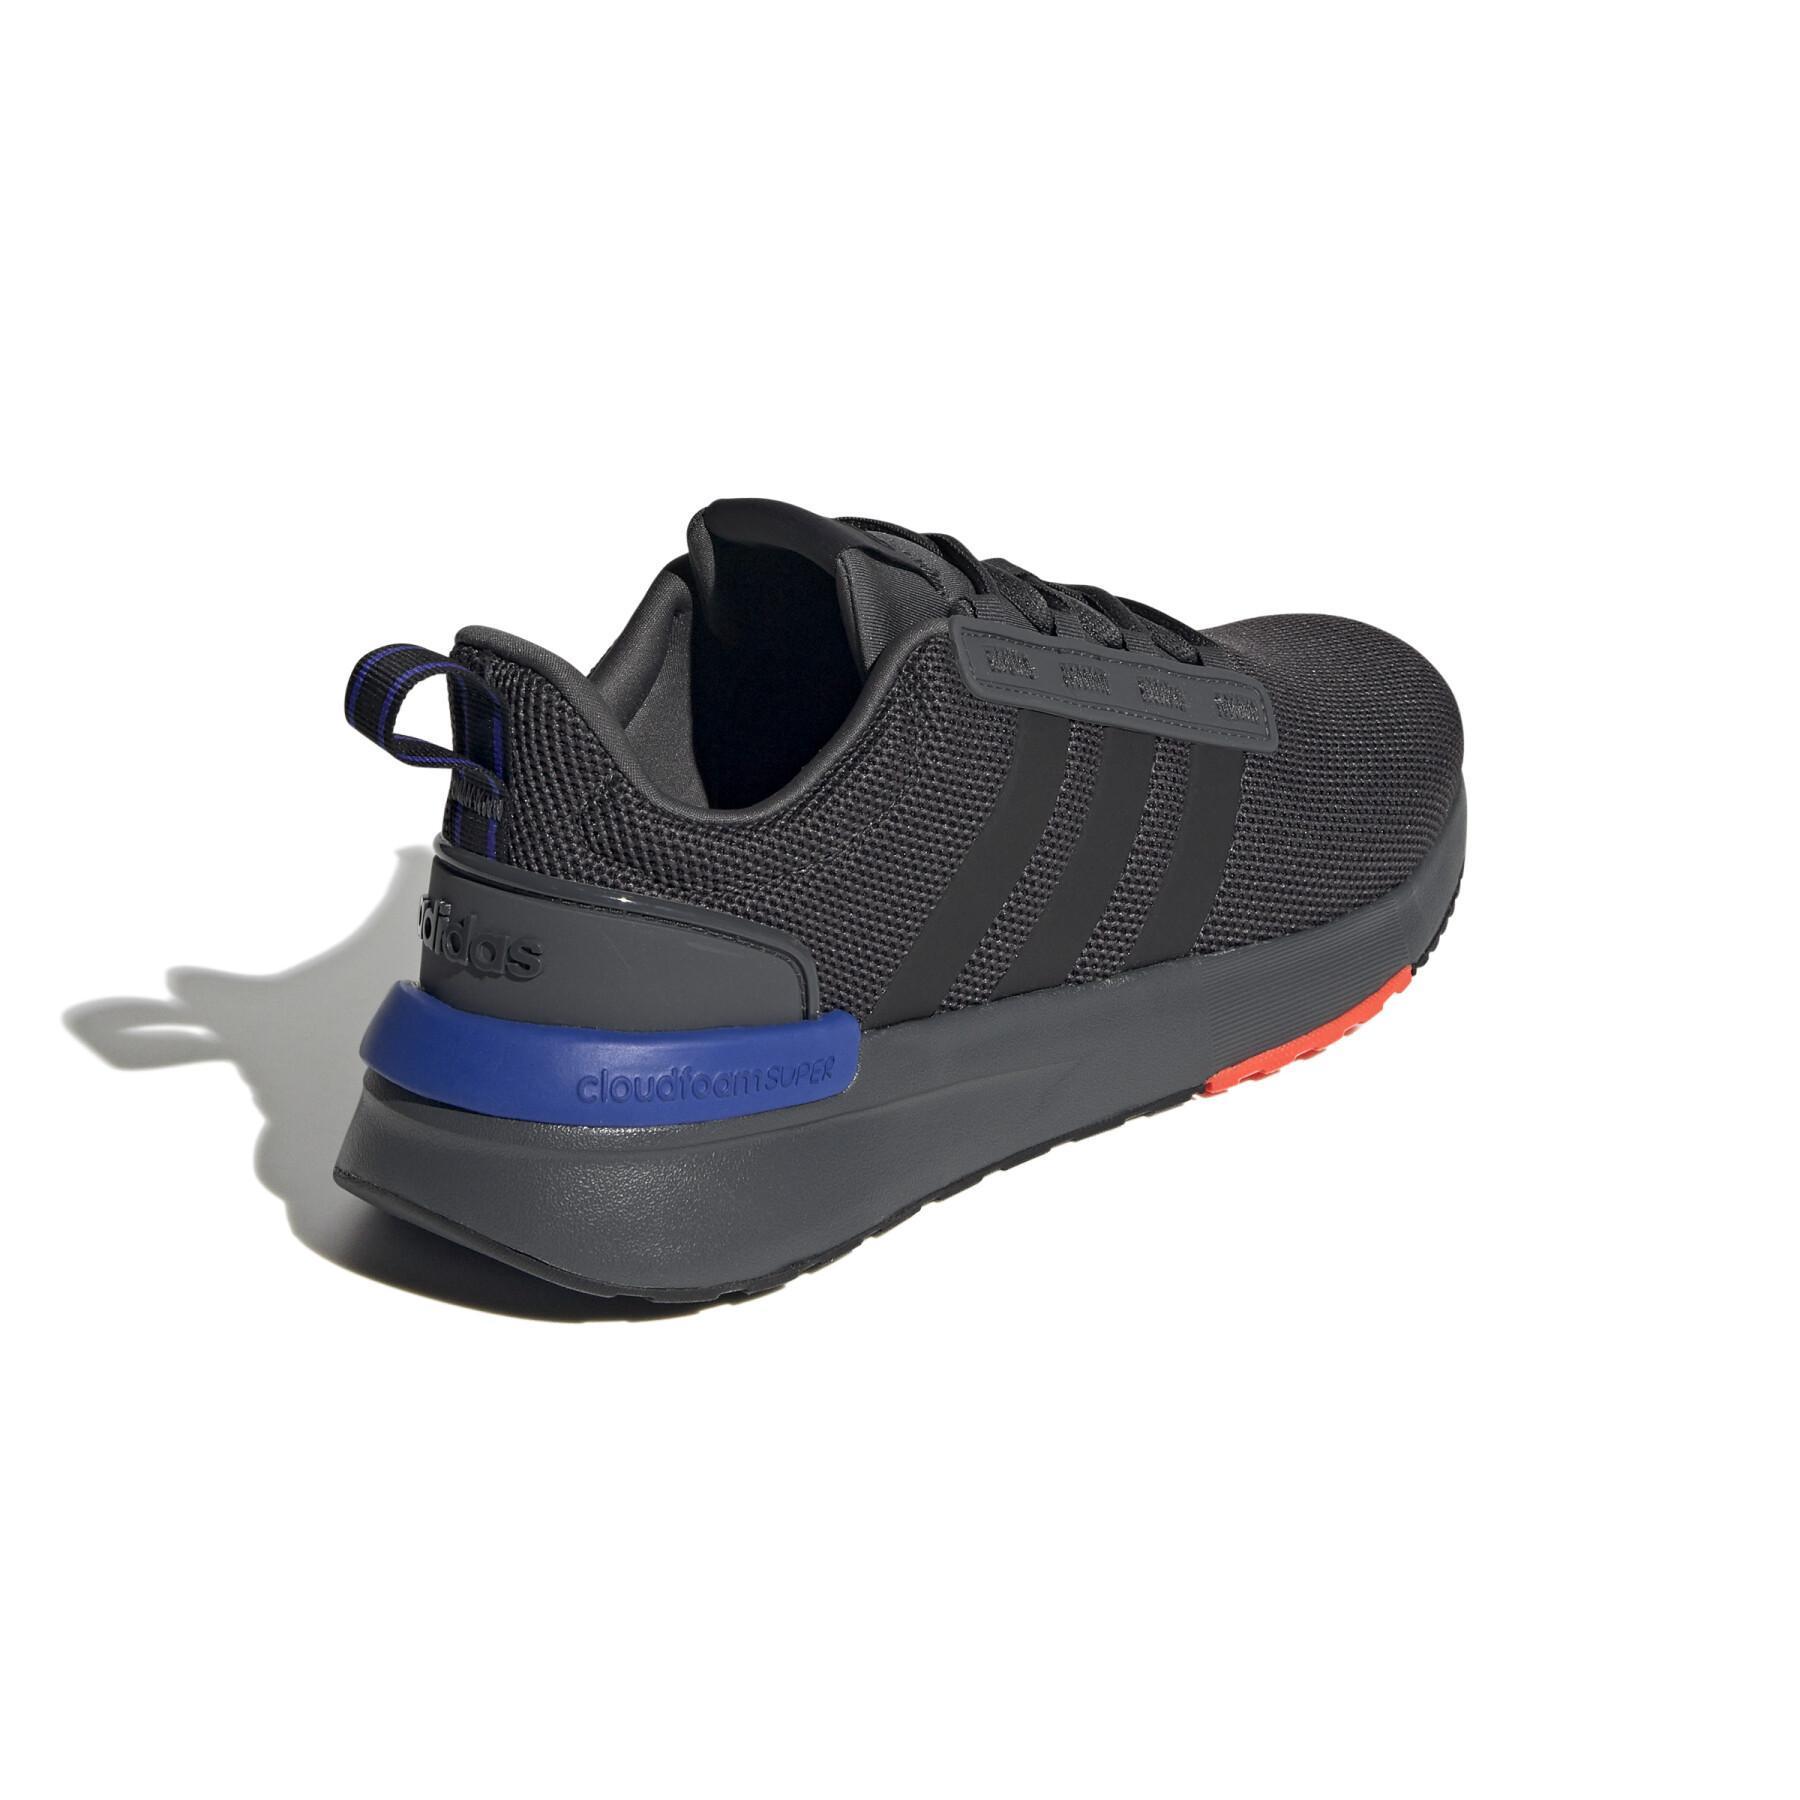 Schoenen voor Running adidas Racer Tr 21